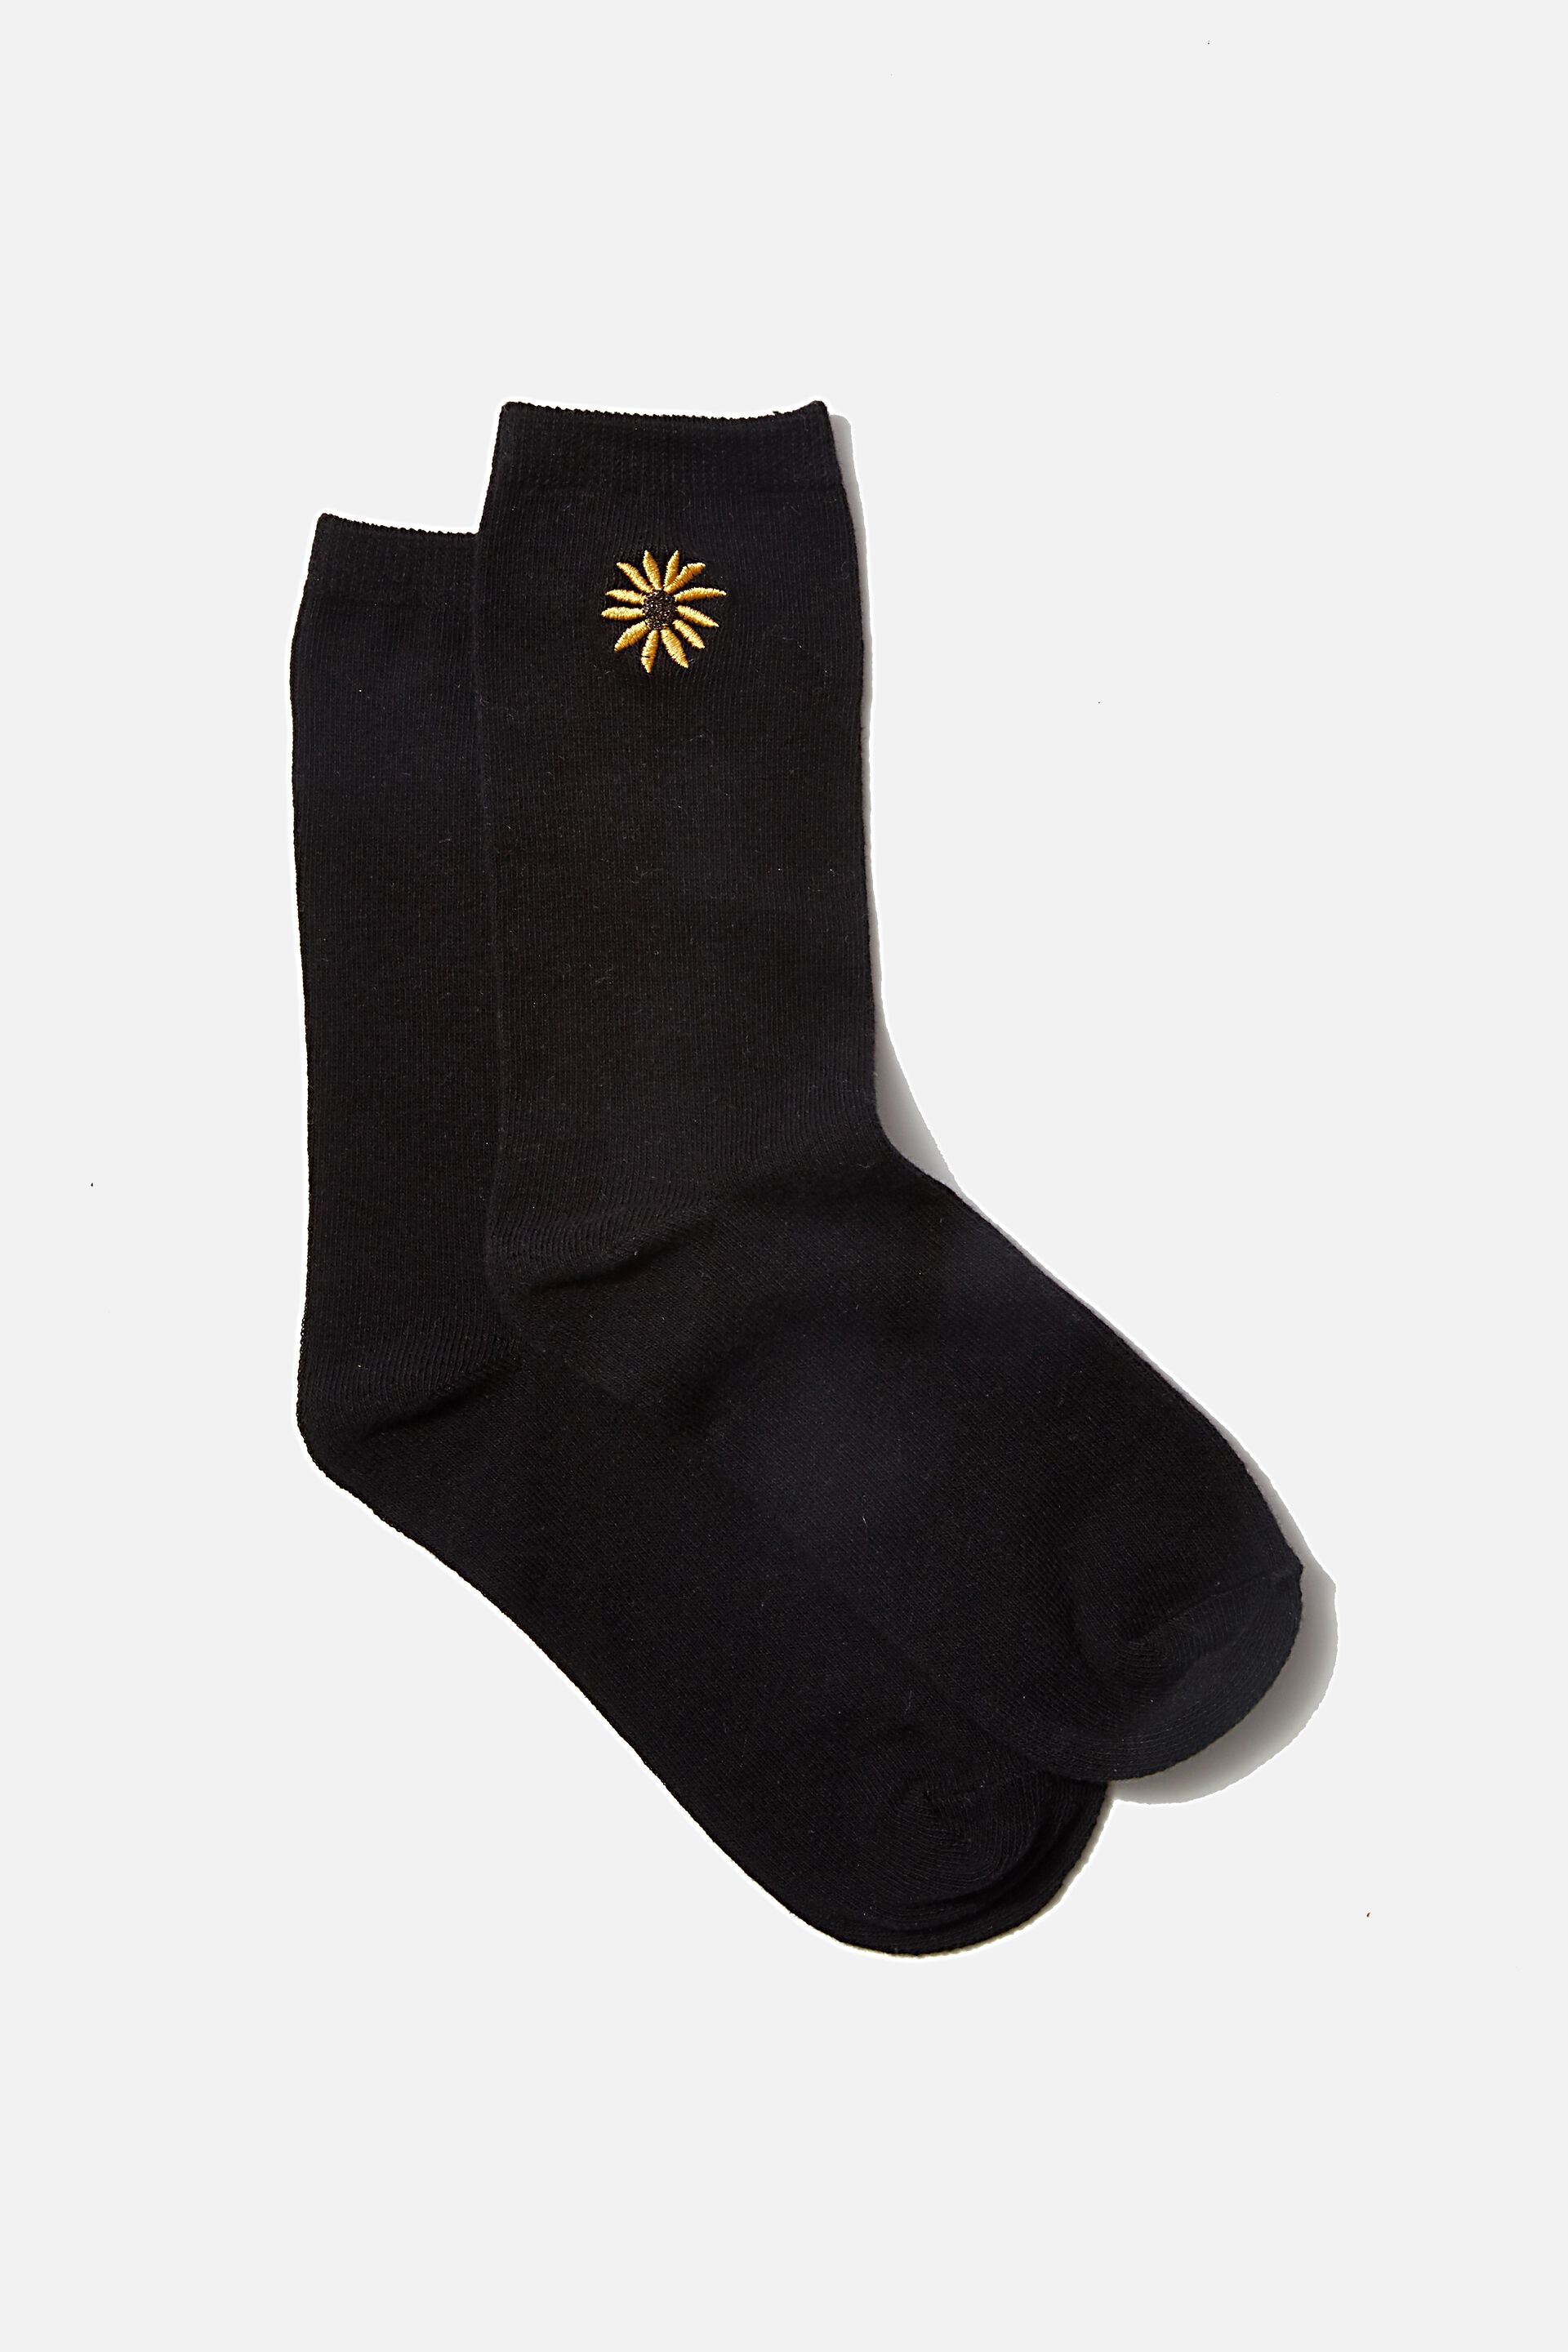 Sunflower Black Novelty Socks For Women /& Men One Size Gifts